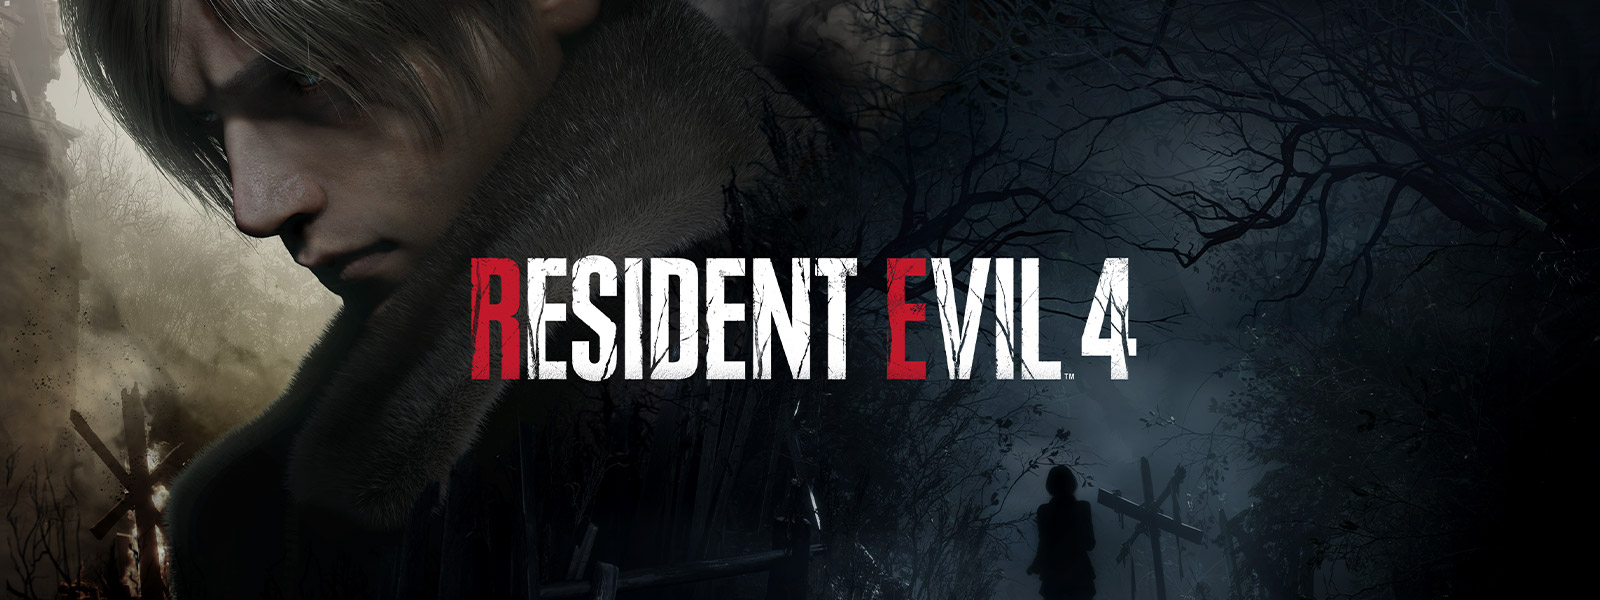 Resident Evil 4, egy ősz hajú férfi ünnepélyesen elfordul, miközben egy nő elhalad egy sötét, hátborzongató erdei ösvényen.